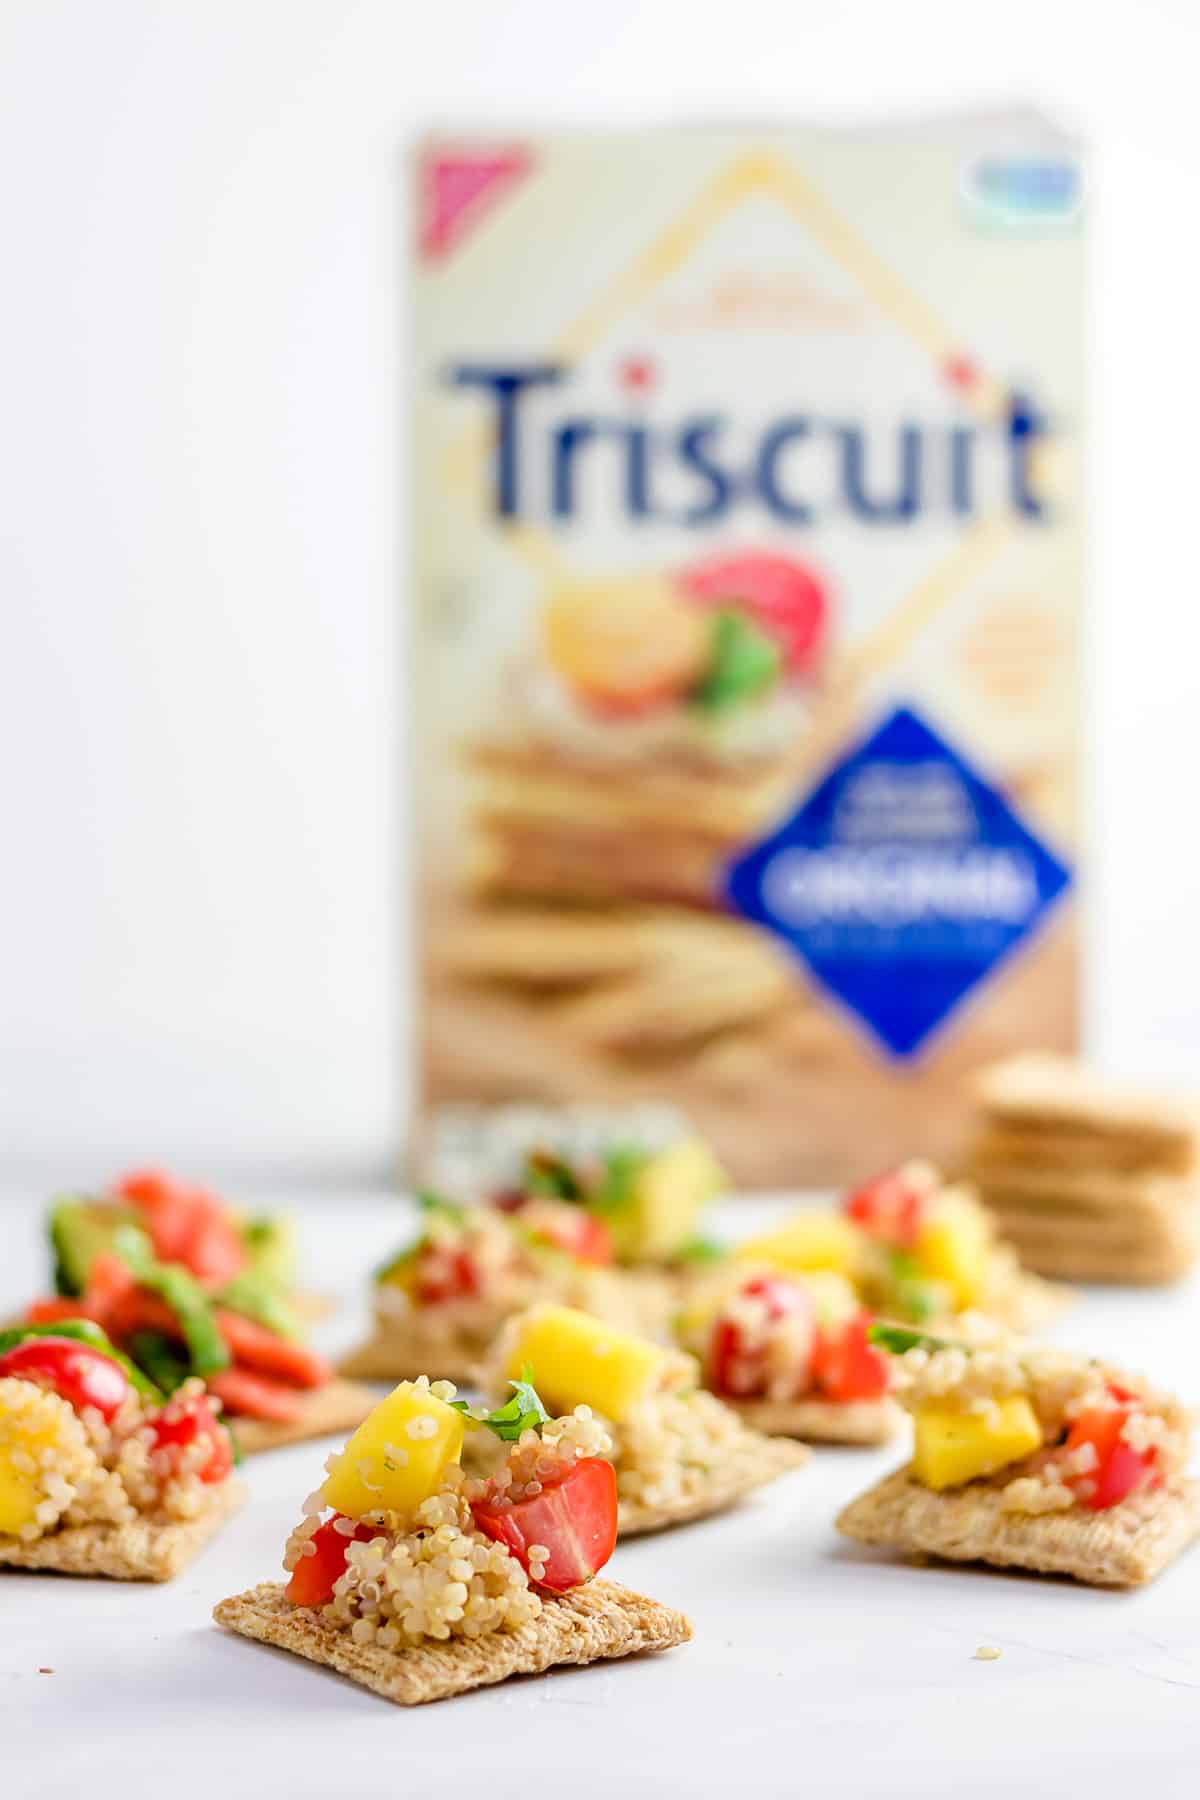 TRISCUIT Crackers with Quinoa Mango Salad